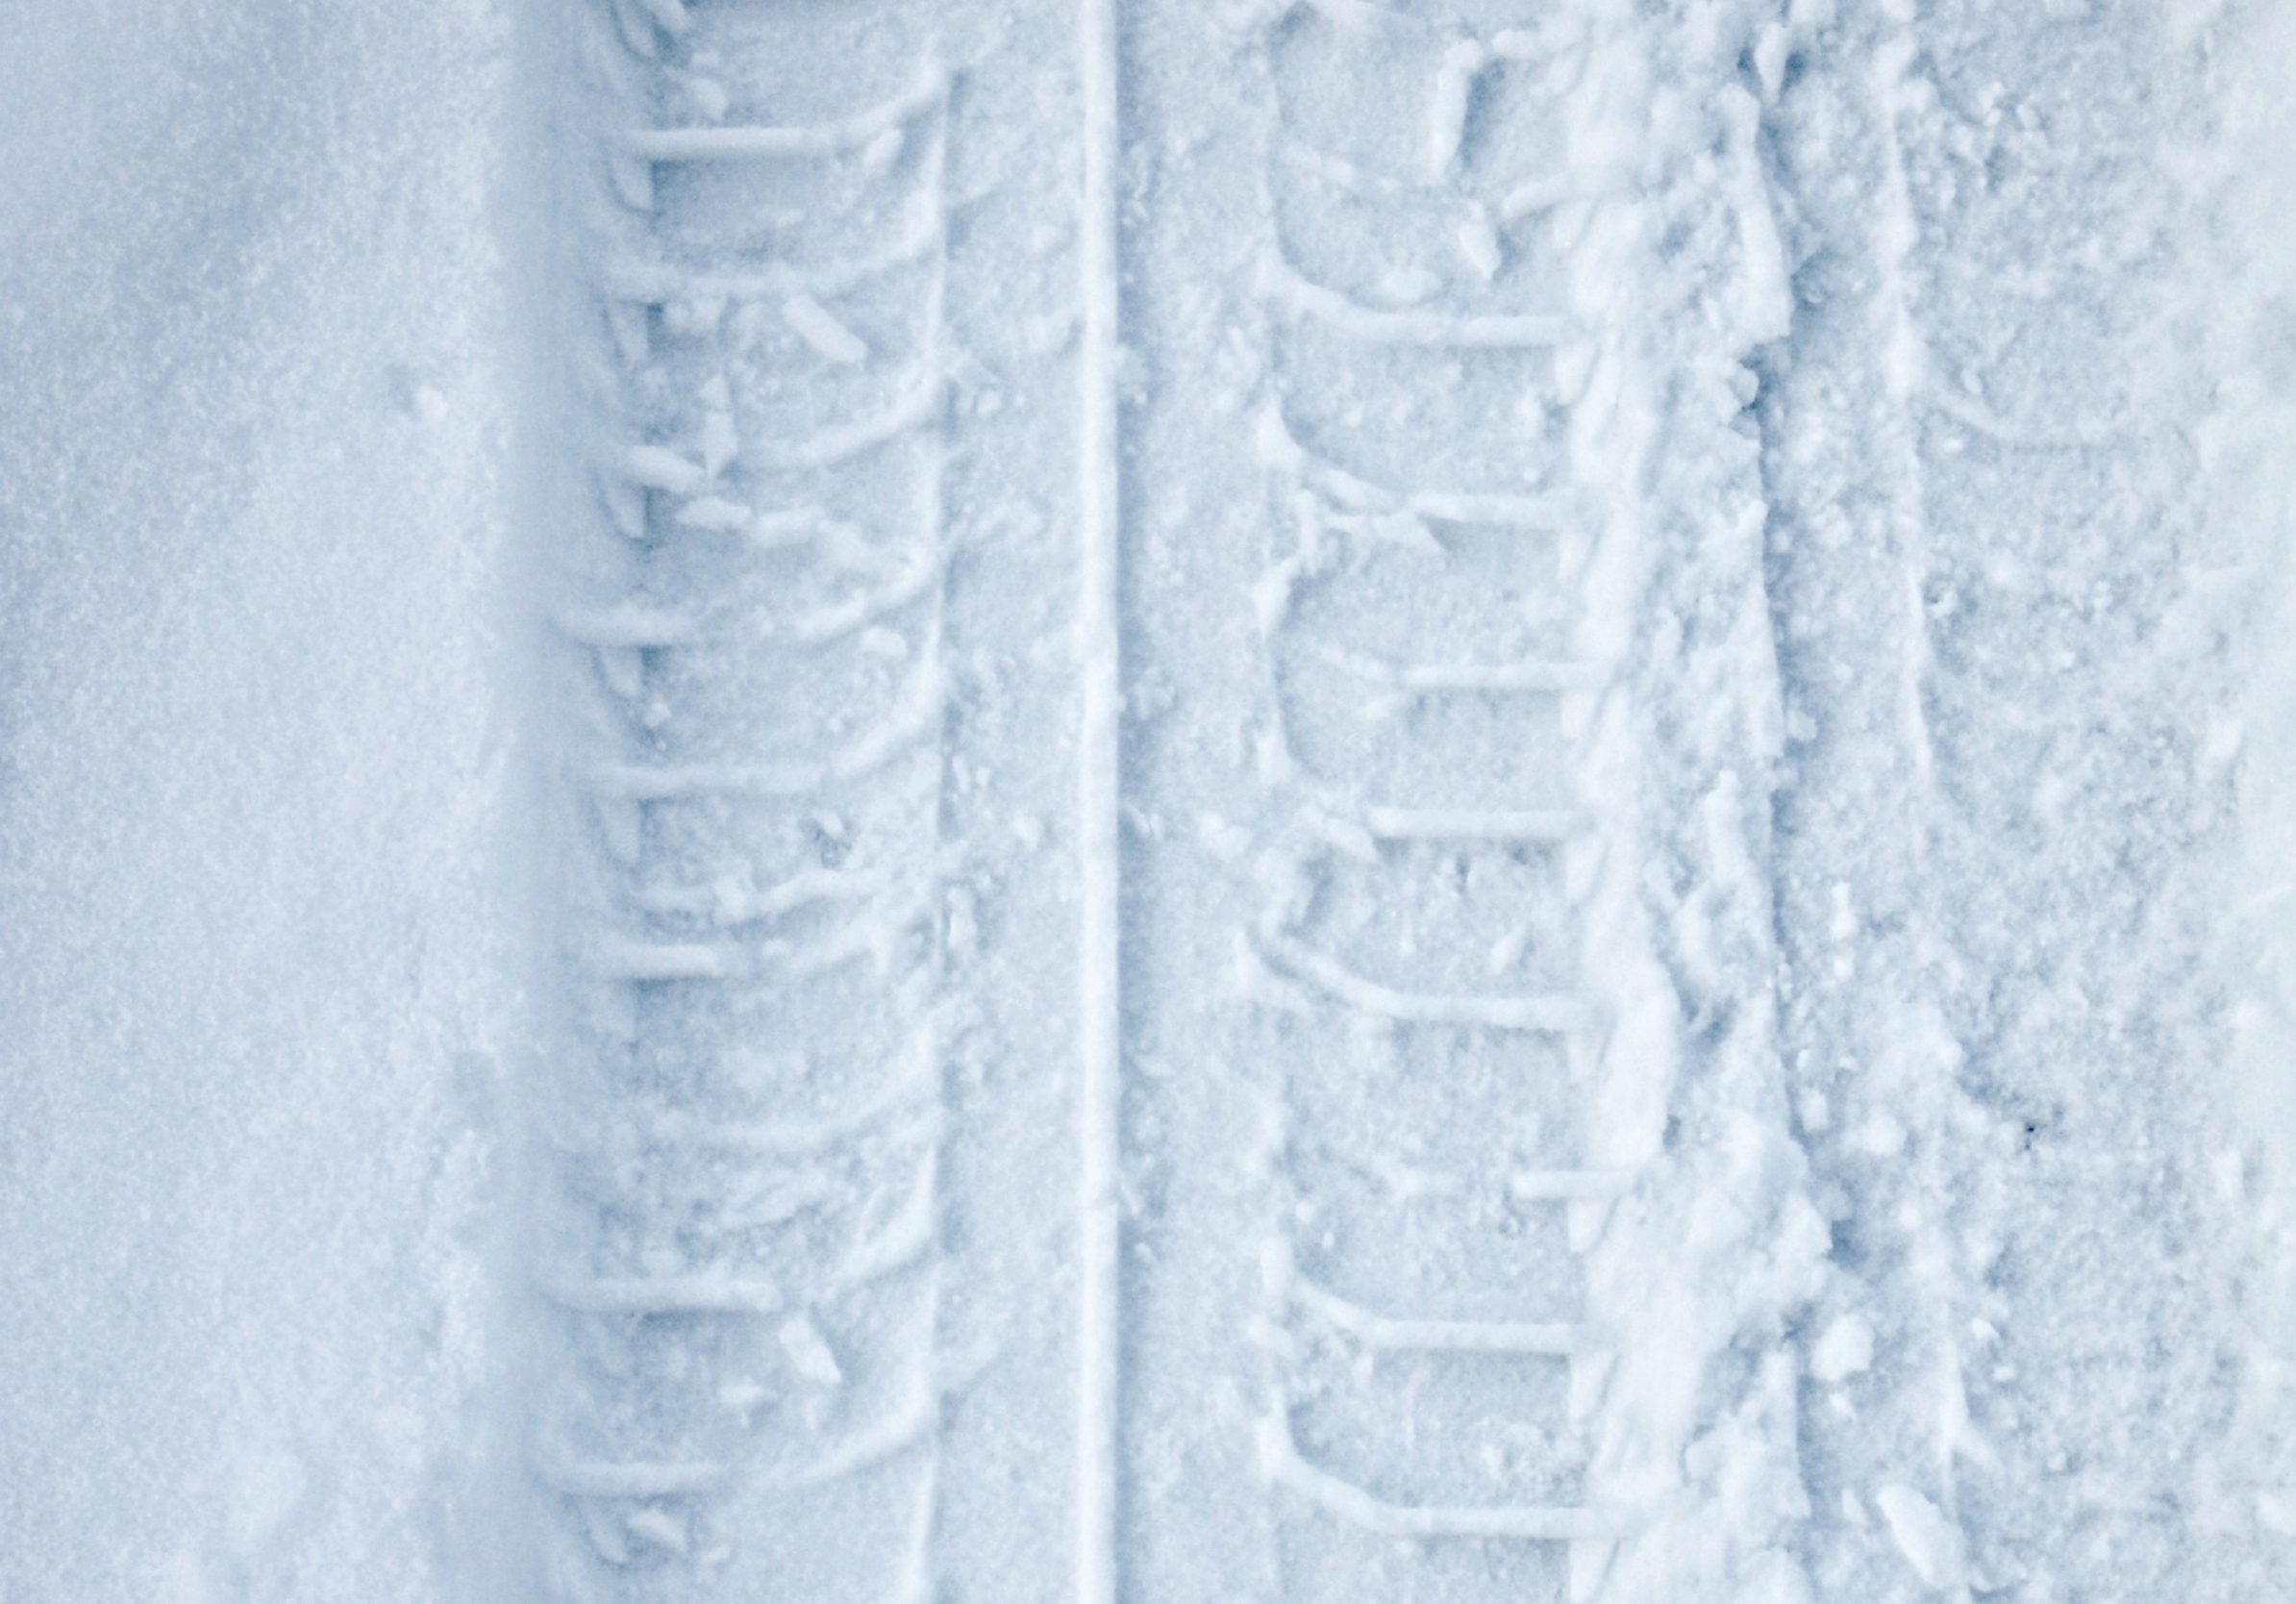 2388x1668 iPad Pro wallpapers Tyre Track Snow Winter iPad Wallpaper 2388x1668 pixels resolution